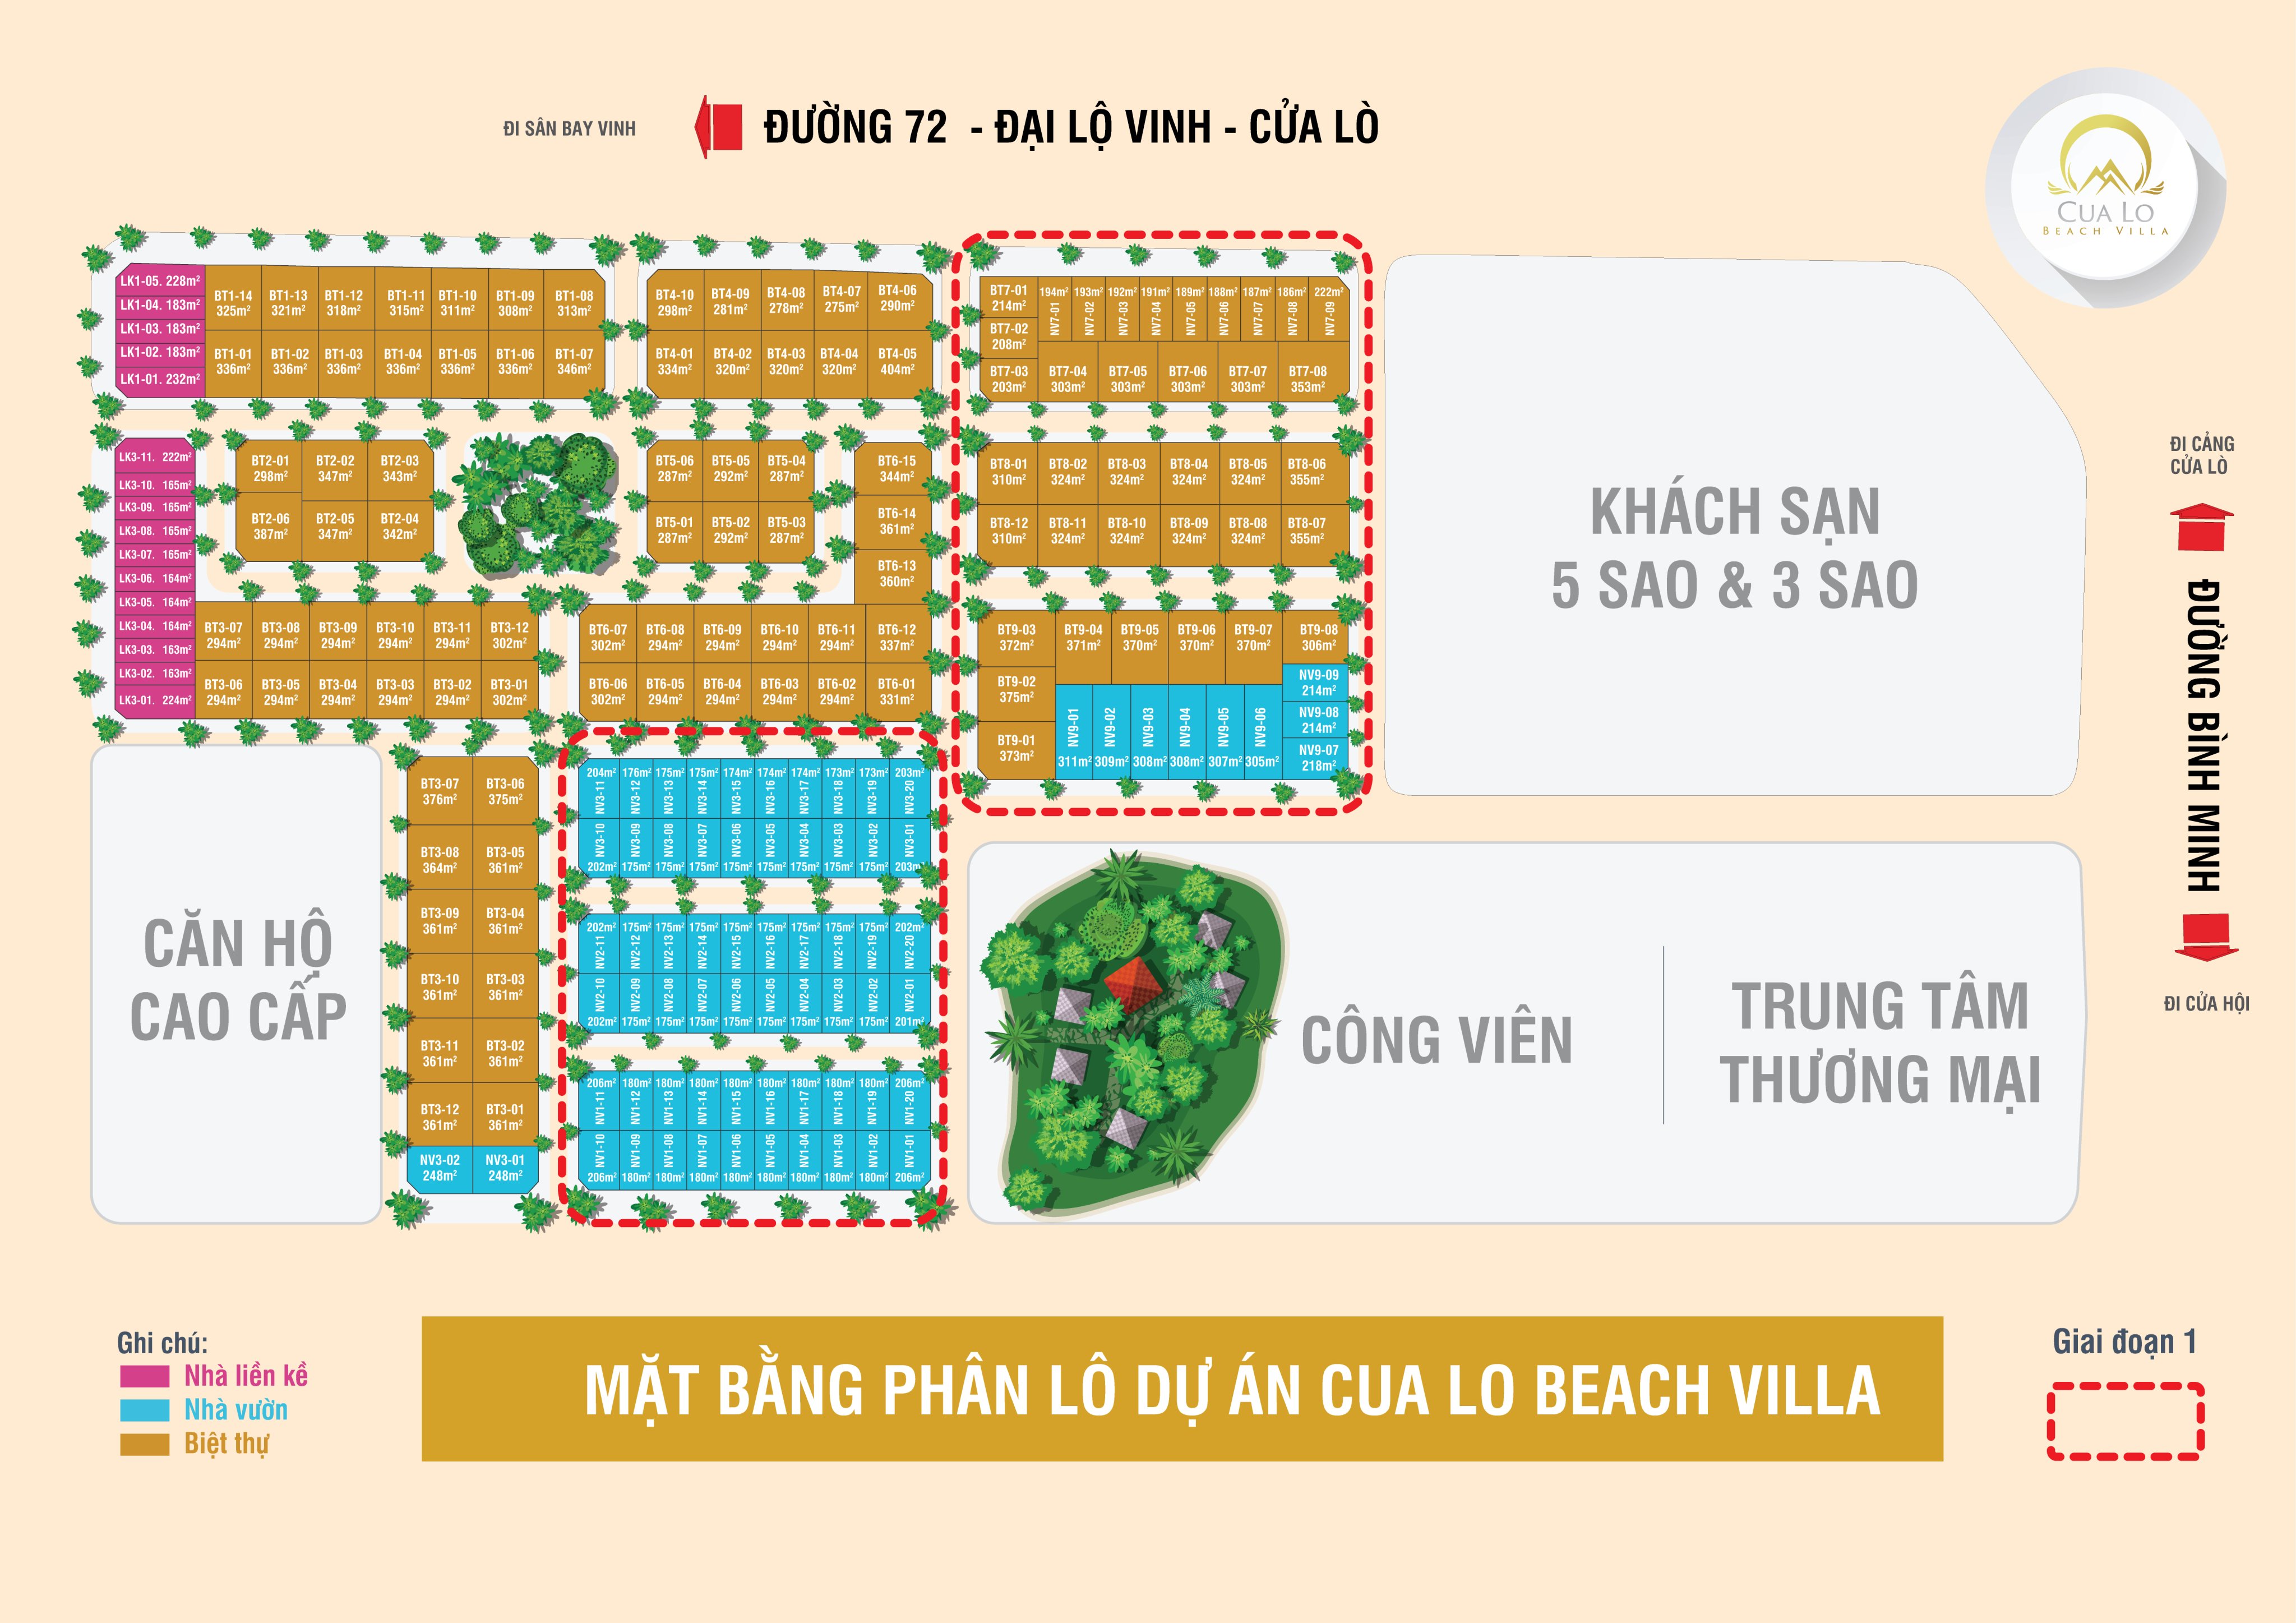 Mặt bằng phân lô dự án Cửa Lò Beach Villa